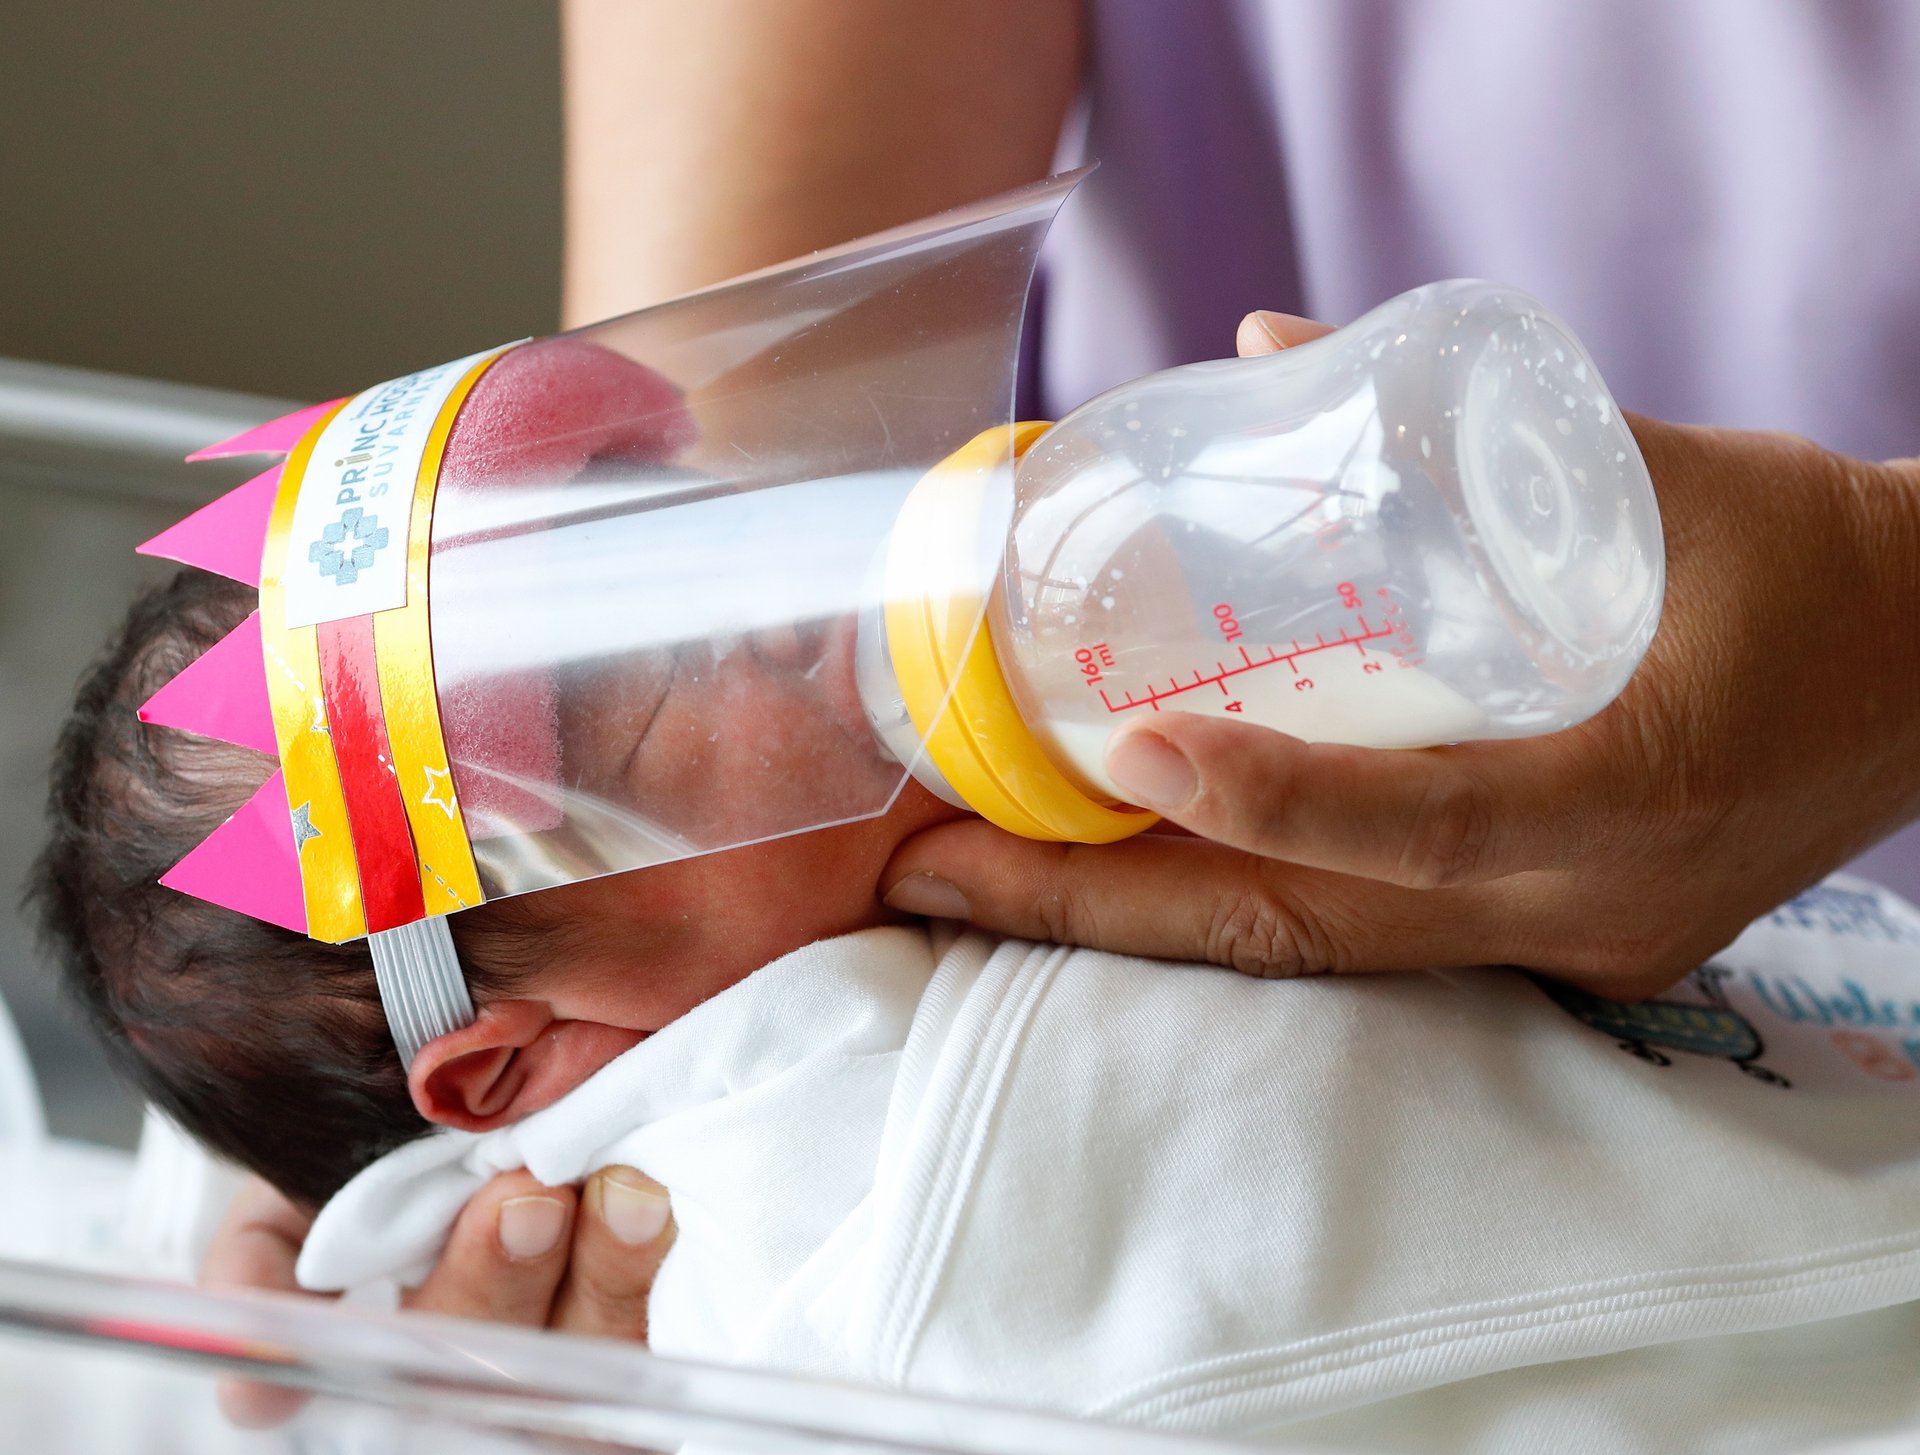 Maternidad en tiempos de coronavirus: ¿qué necesito para proteger a mi bebé?